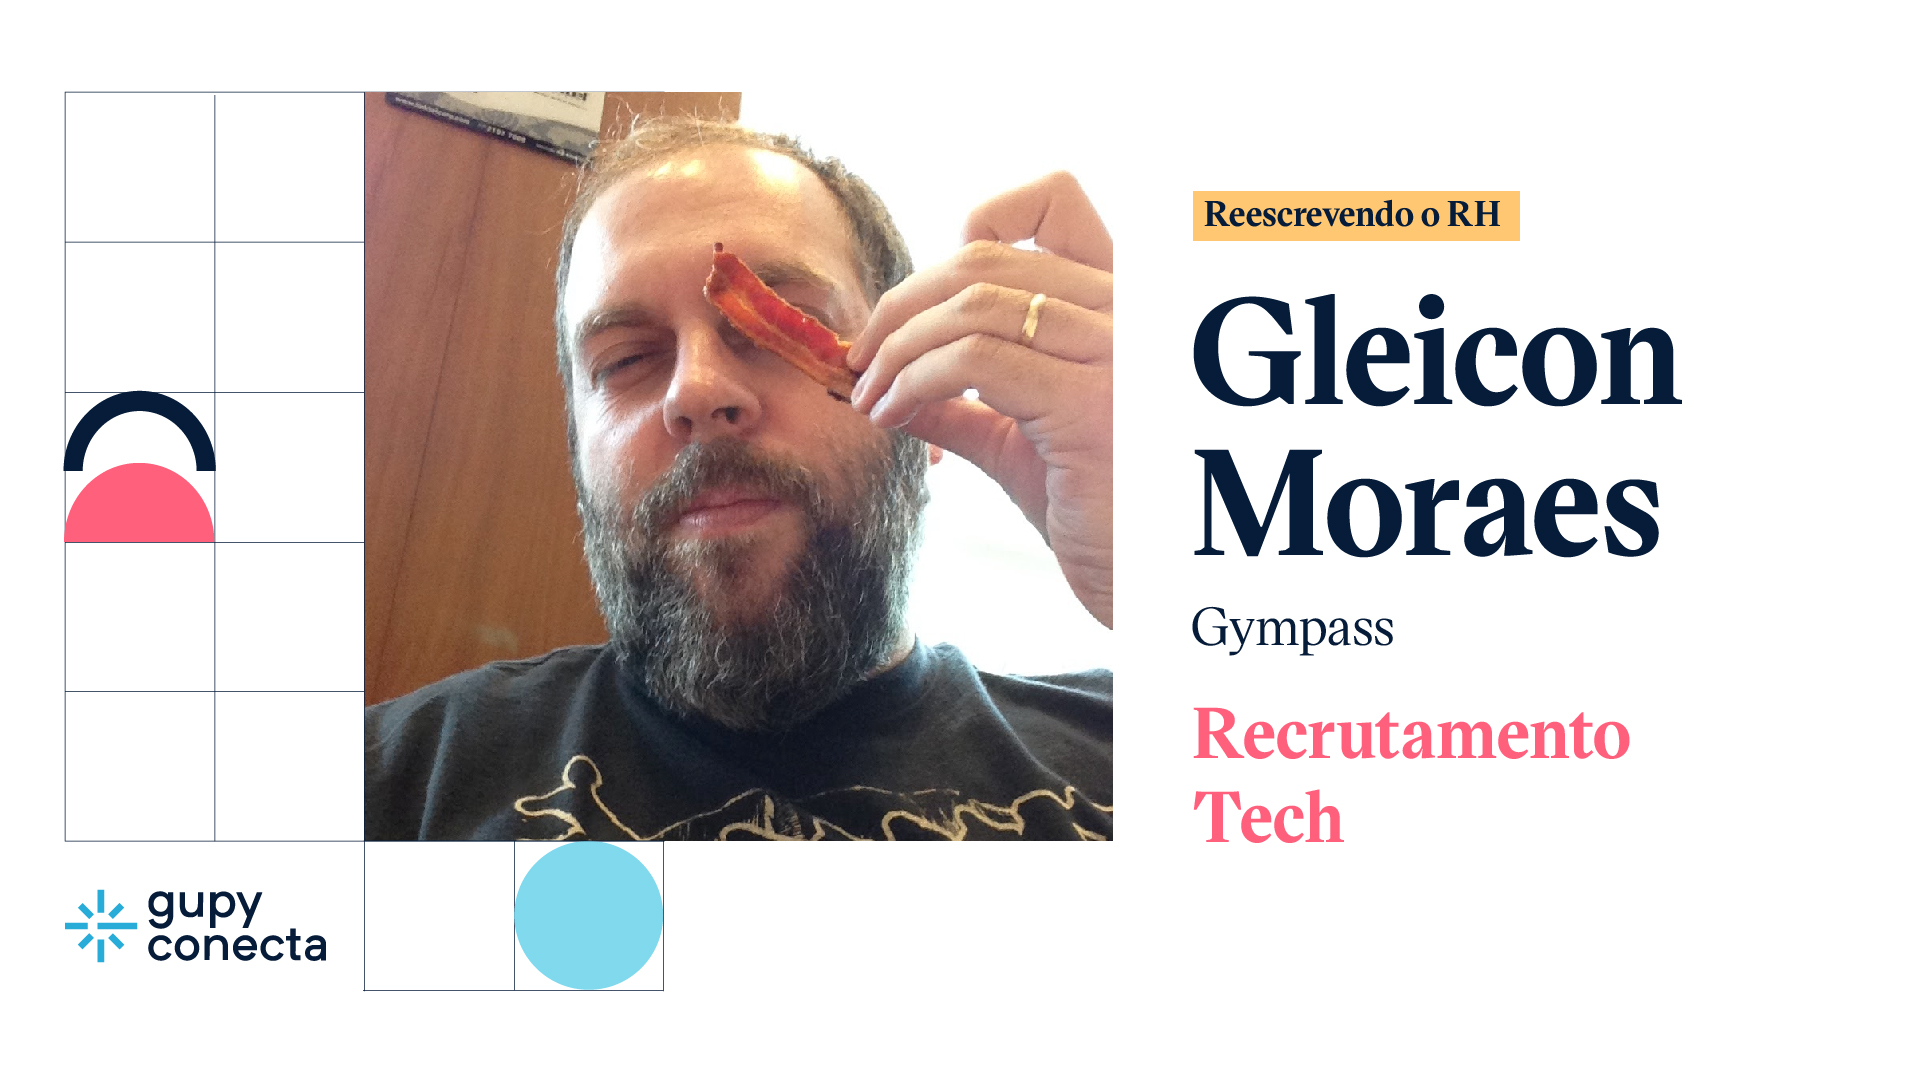 Gleicon Moraes